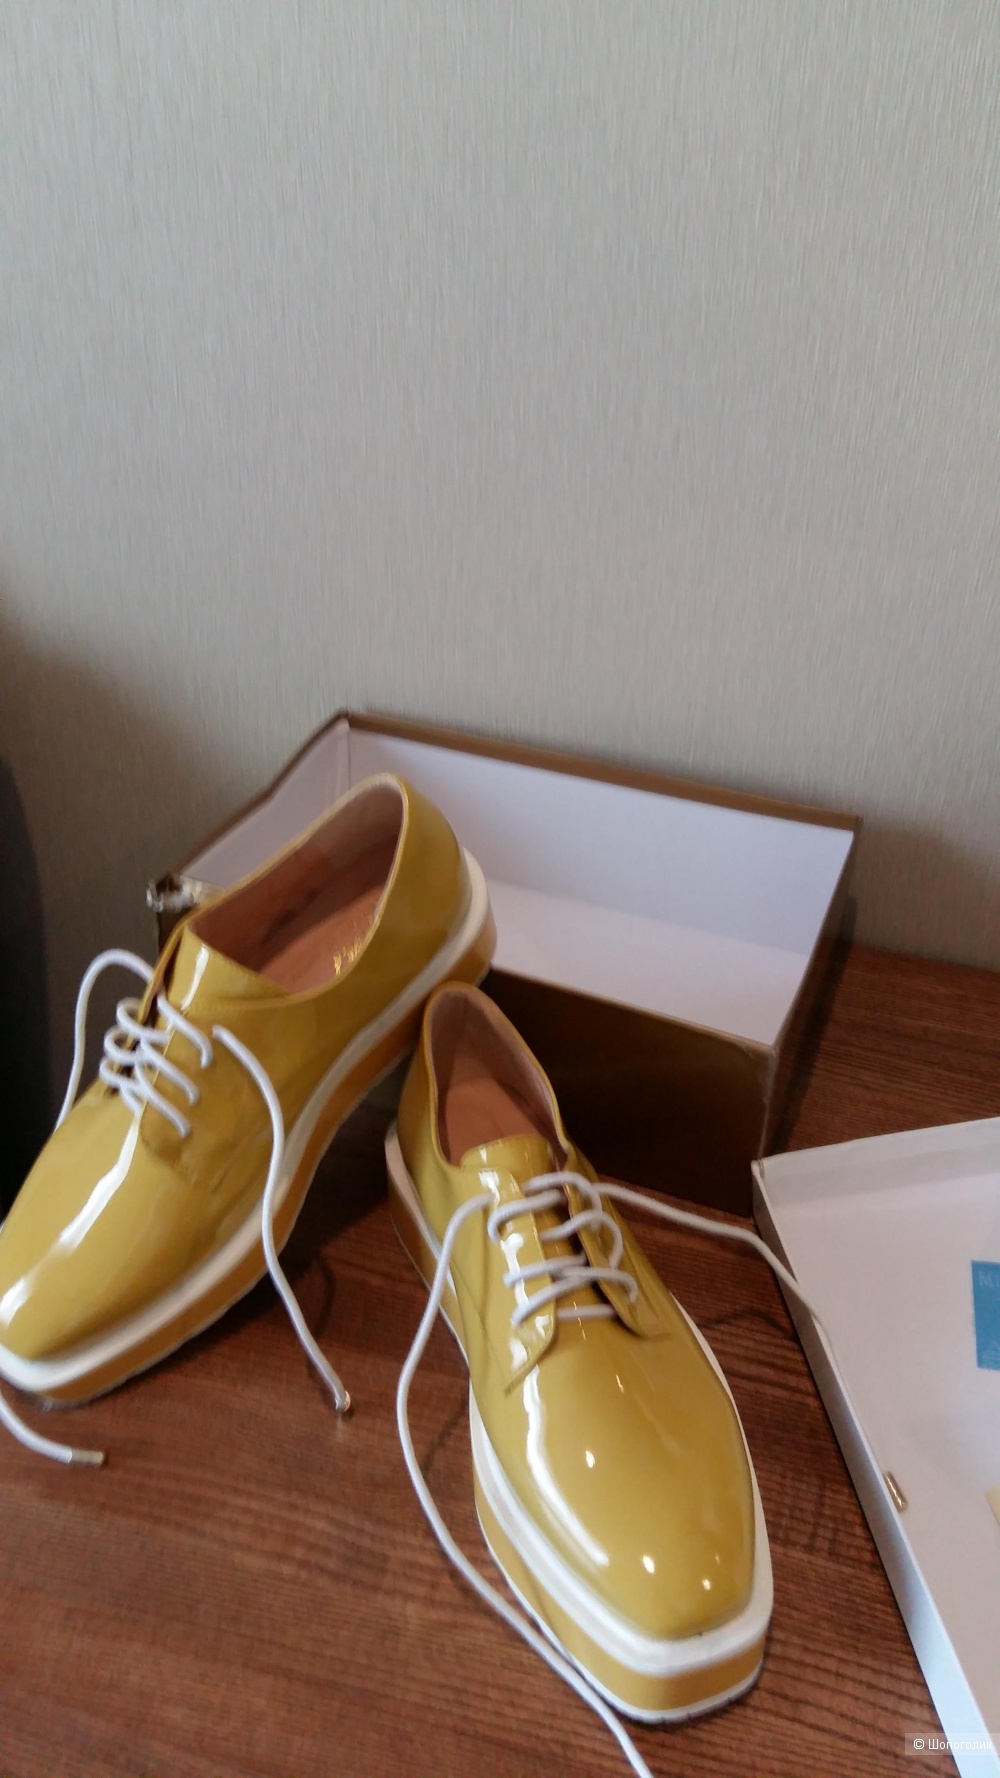 Новые туфли- оксфорды,Турция,36р, цвет жёлтый